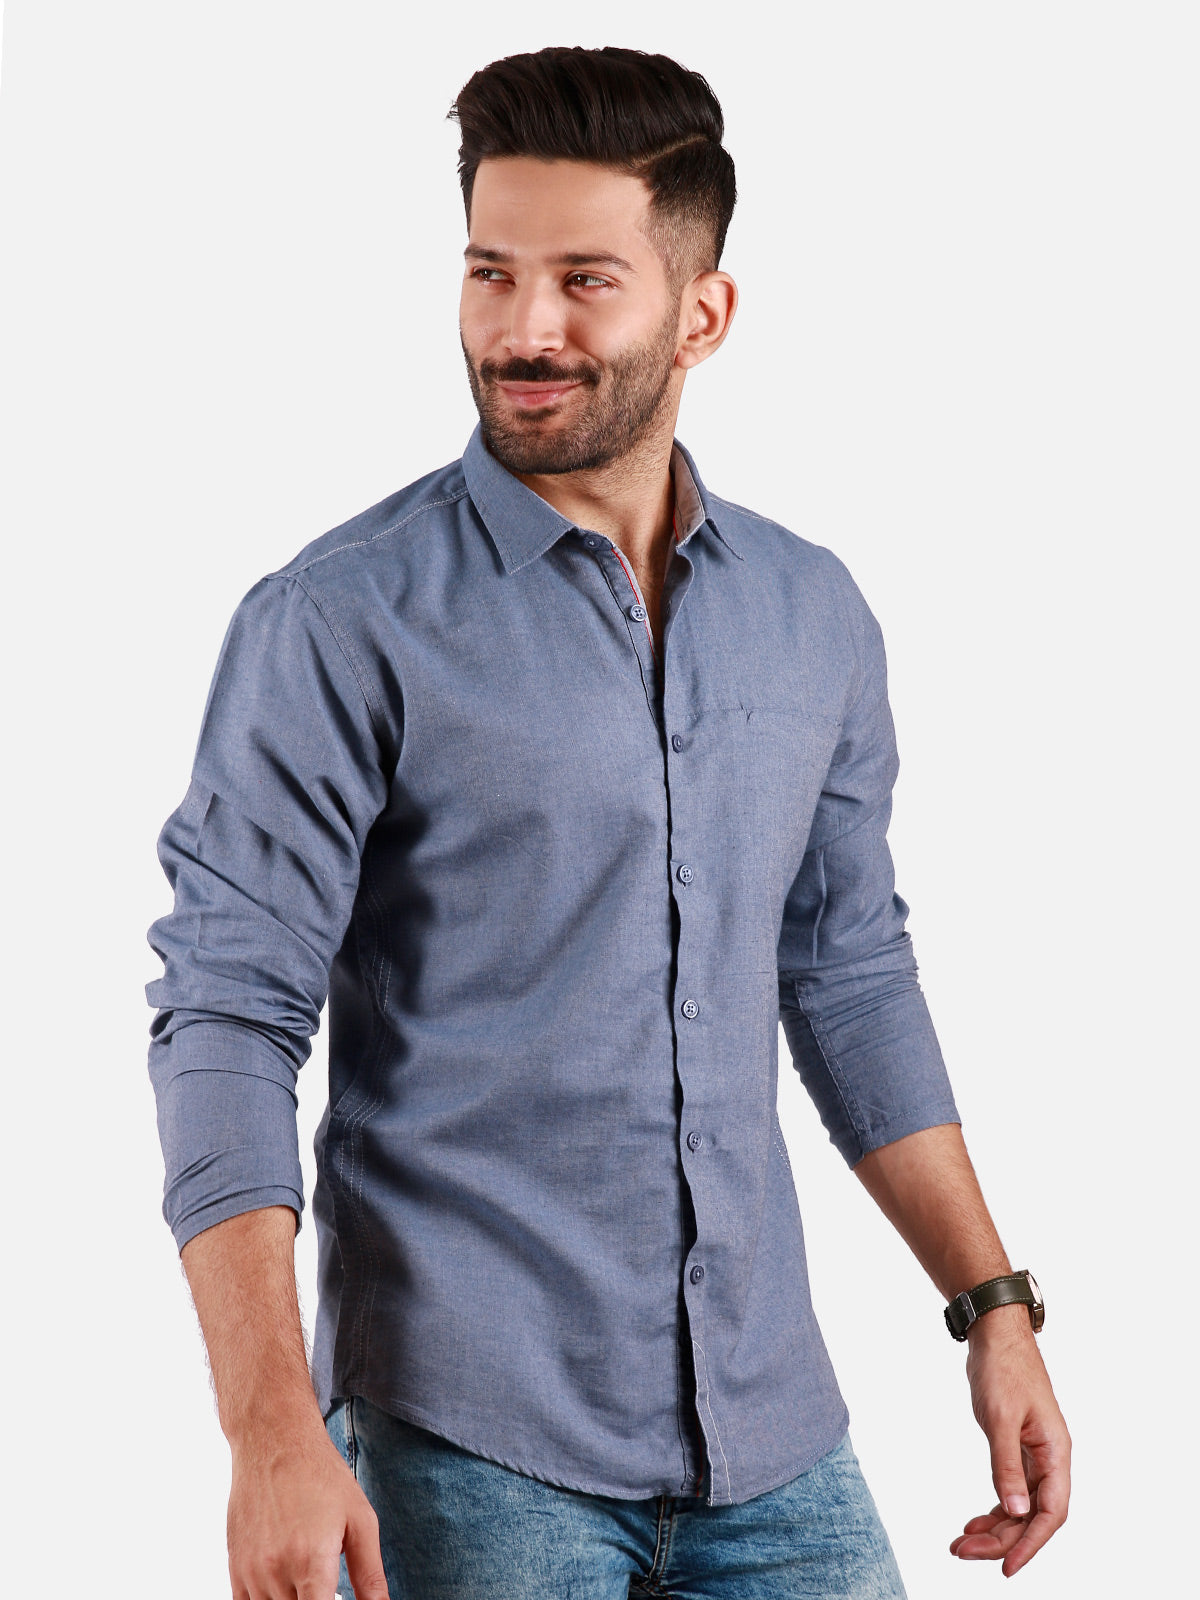 Men's Grey Casual Shirt - FMTS20-31339